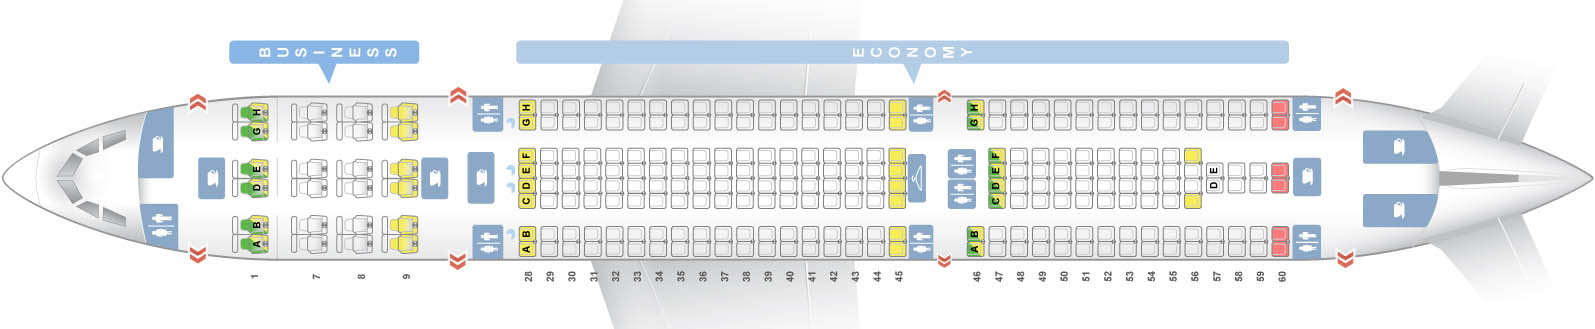 Самолет Аэробус A330: нумерация мест в салоне, схема посадочных мест, лучшие места